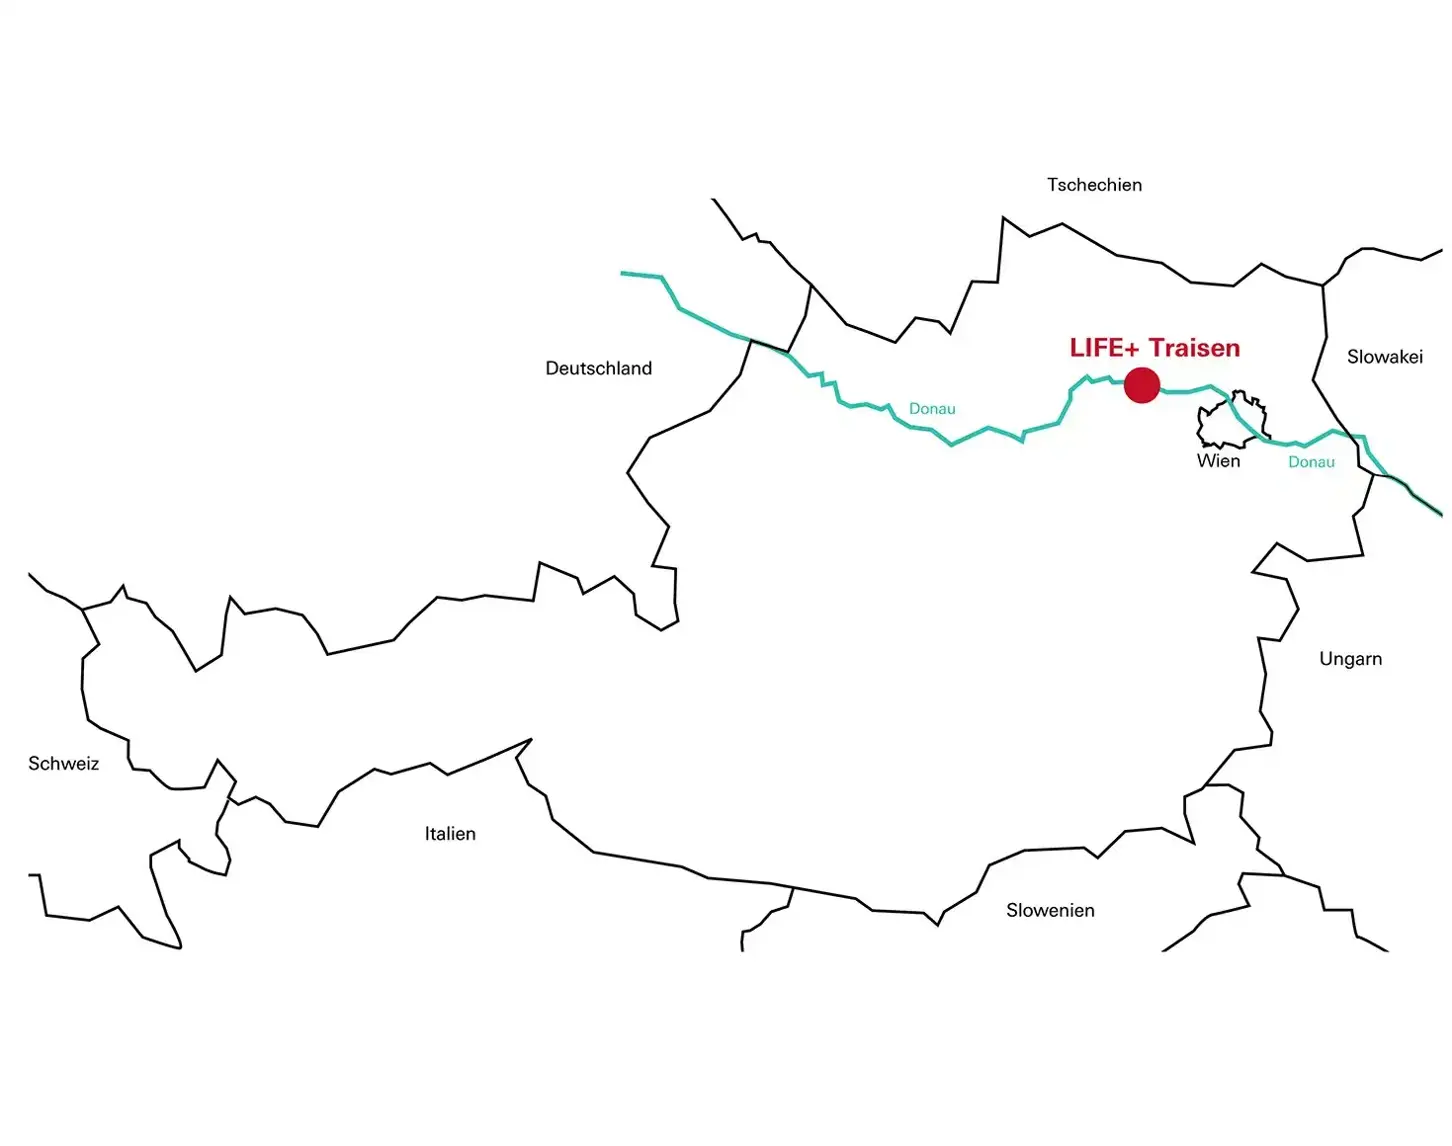 Ein Überblick über das Projekt bei der Traisen. Die Karte von Österreich zeigt im groben wo sich das Projekt LIFE Traisen befindet.